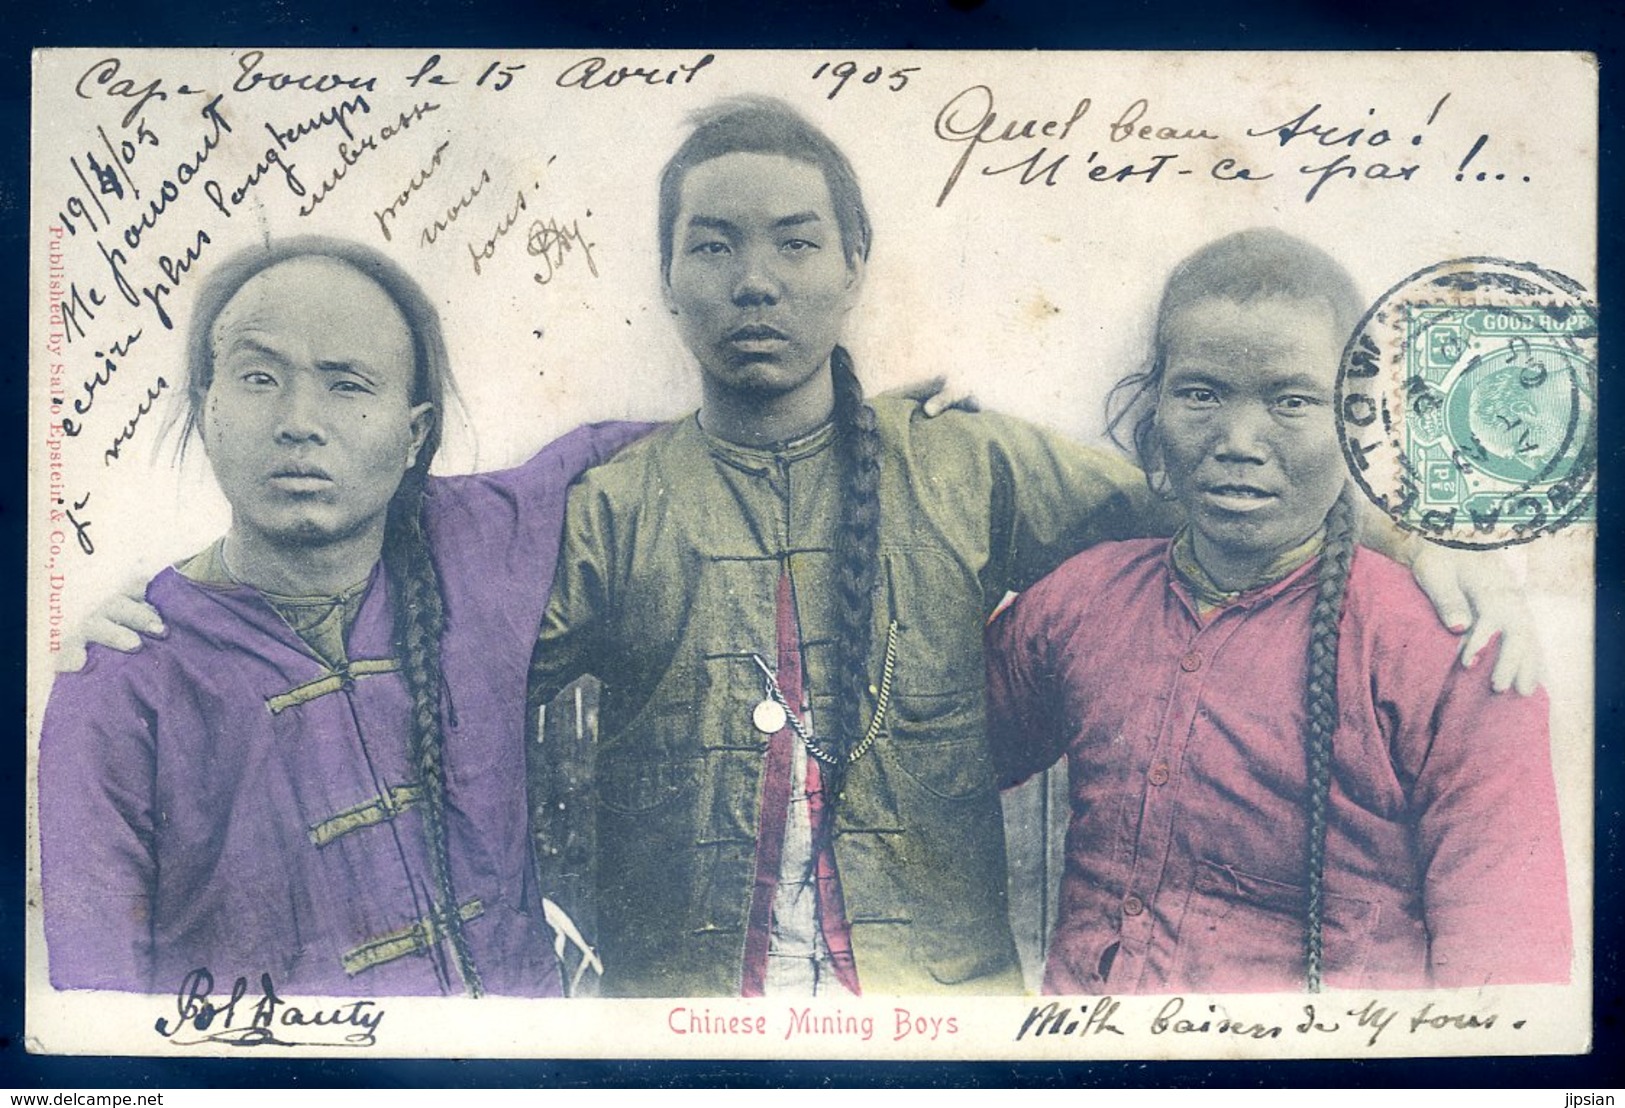 Cpa D' Afrique Du Sud South Africa -- Envoyée De Cape Town 1905 -- Chinese Mining Boys   AFS8 - Afrique Du Sud